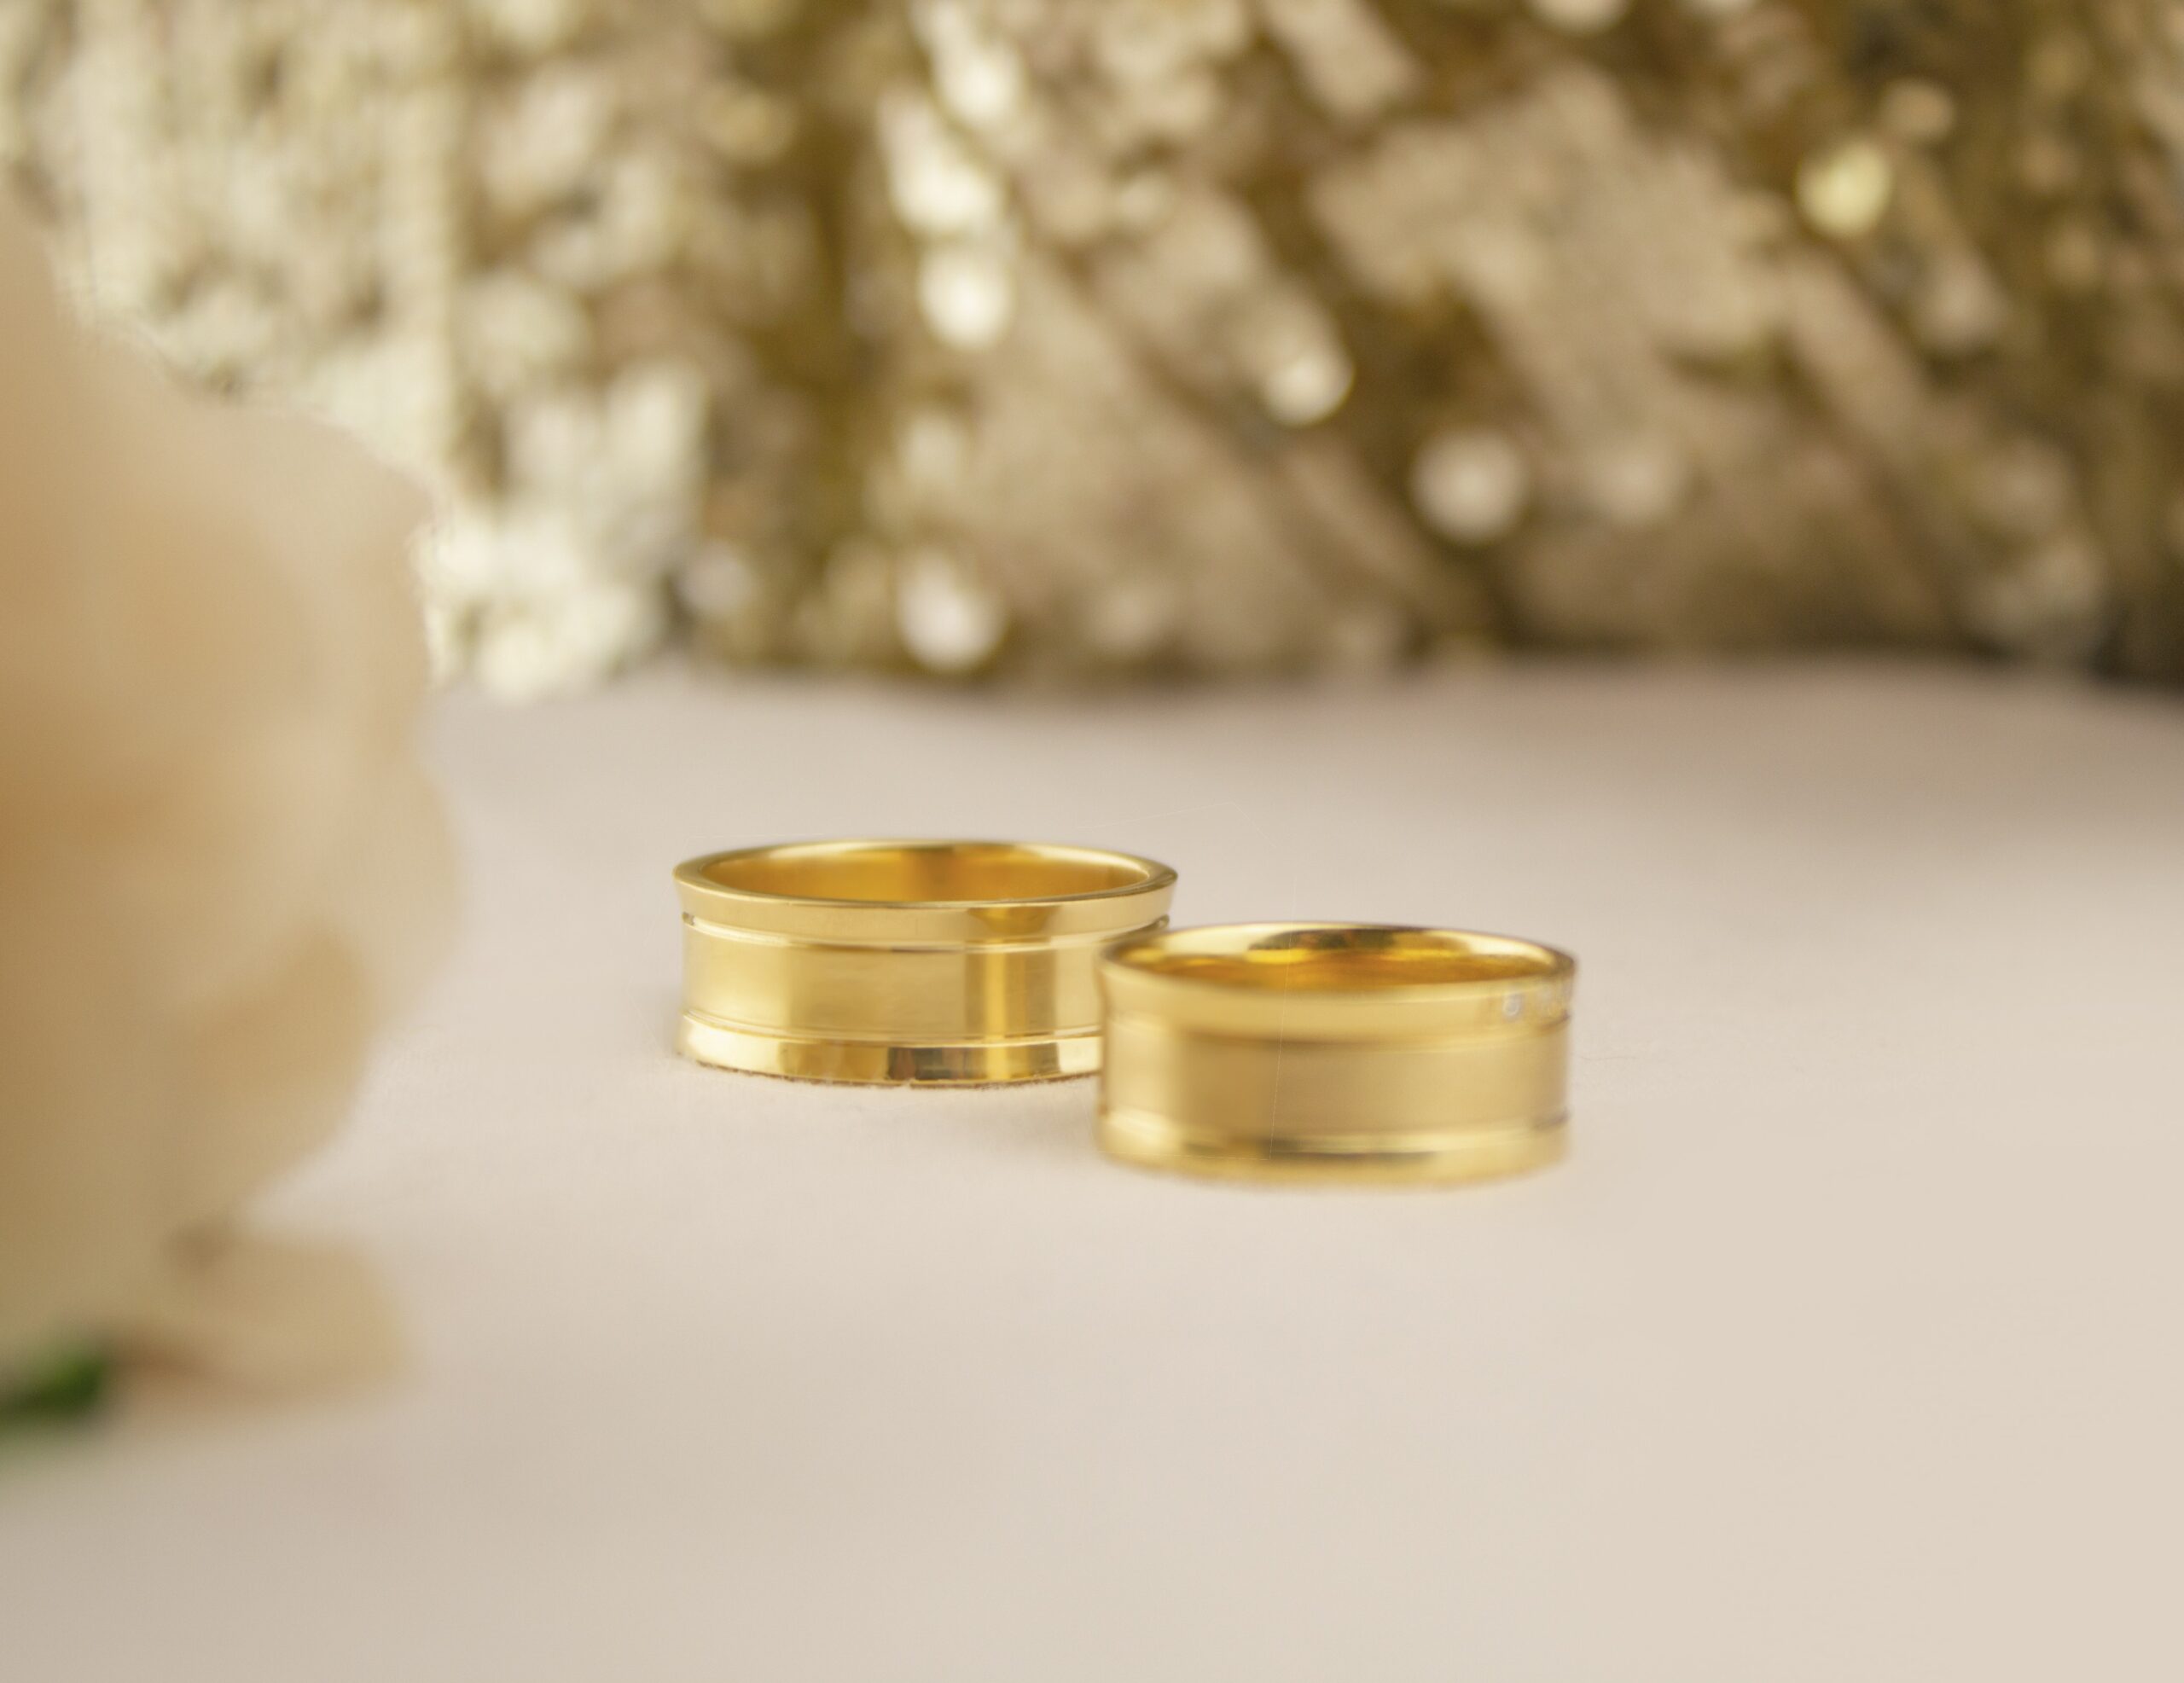 Wedding Rings Online